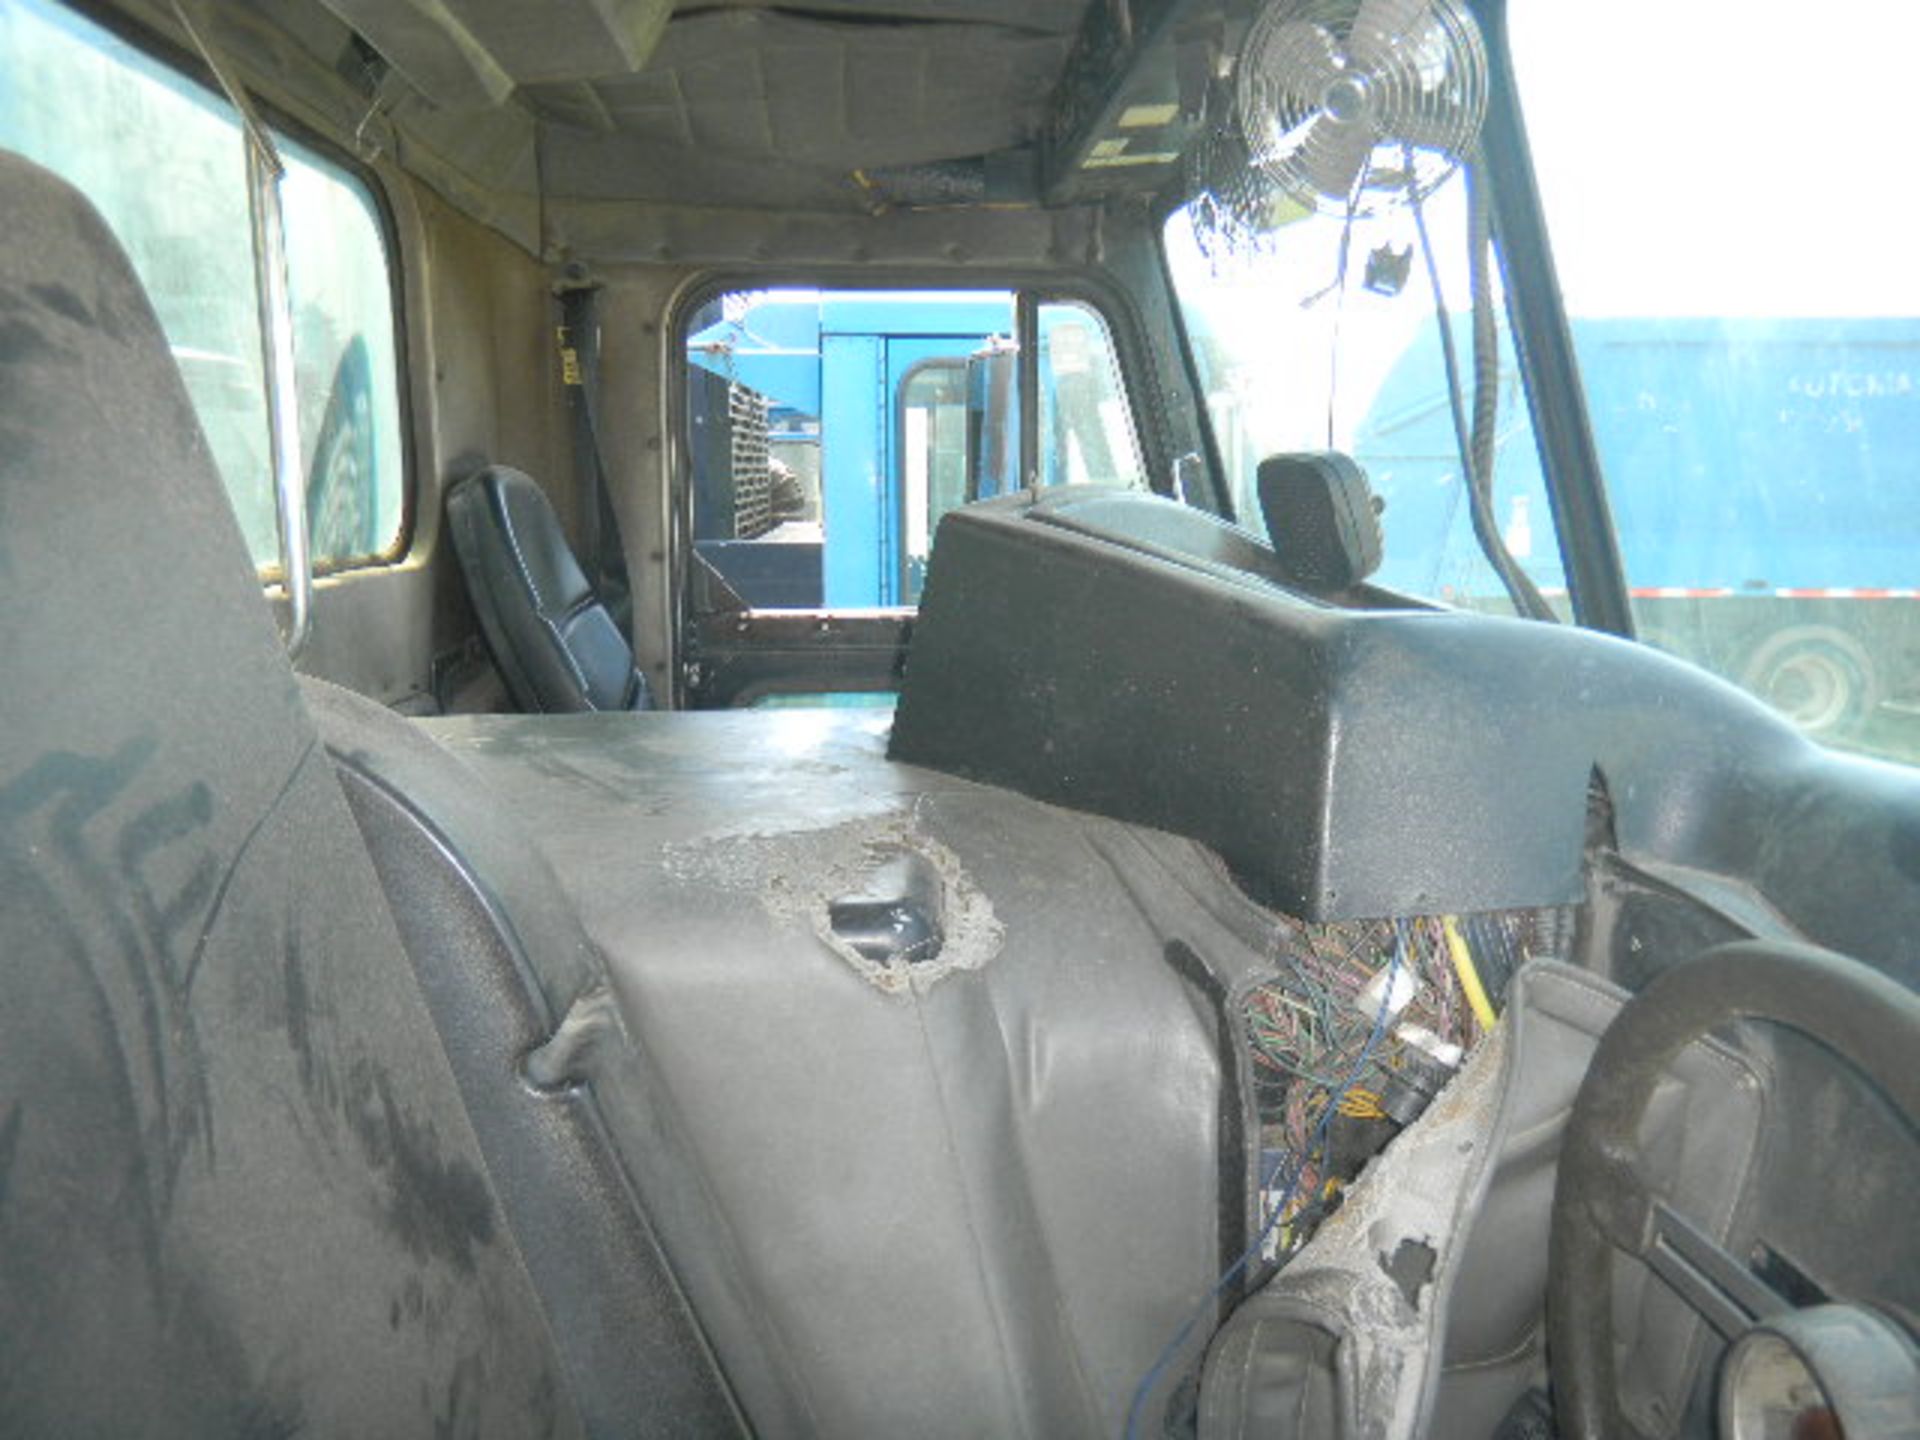 Peterbilt - 20 Yd Heil Rear Loading Sanitation Truck - Asset I.D. #21 - Last of Vin (713662) - Image 5 of 7